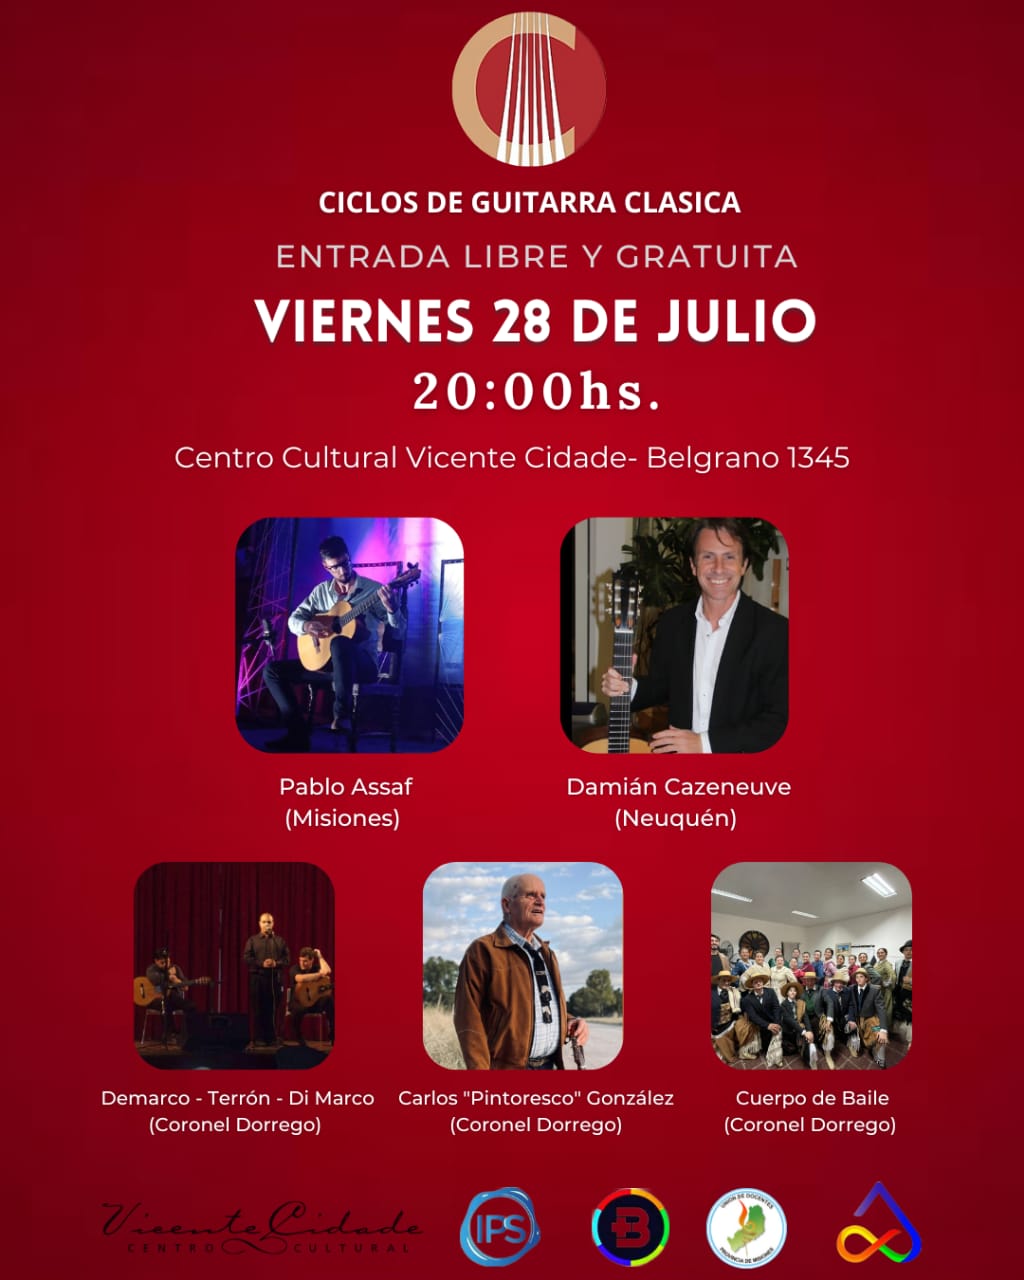 Guitarra clásica y Peña Surera este viernes en el Cidade, "este va a ser un evento único" adelantan imagen-2